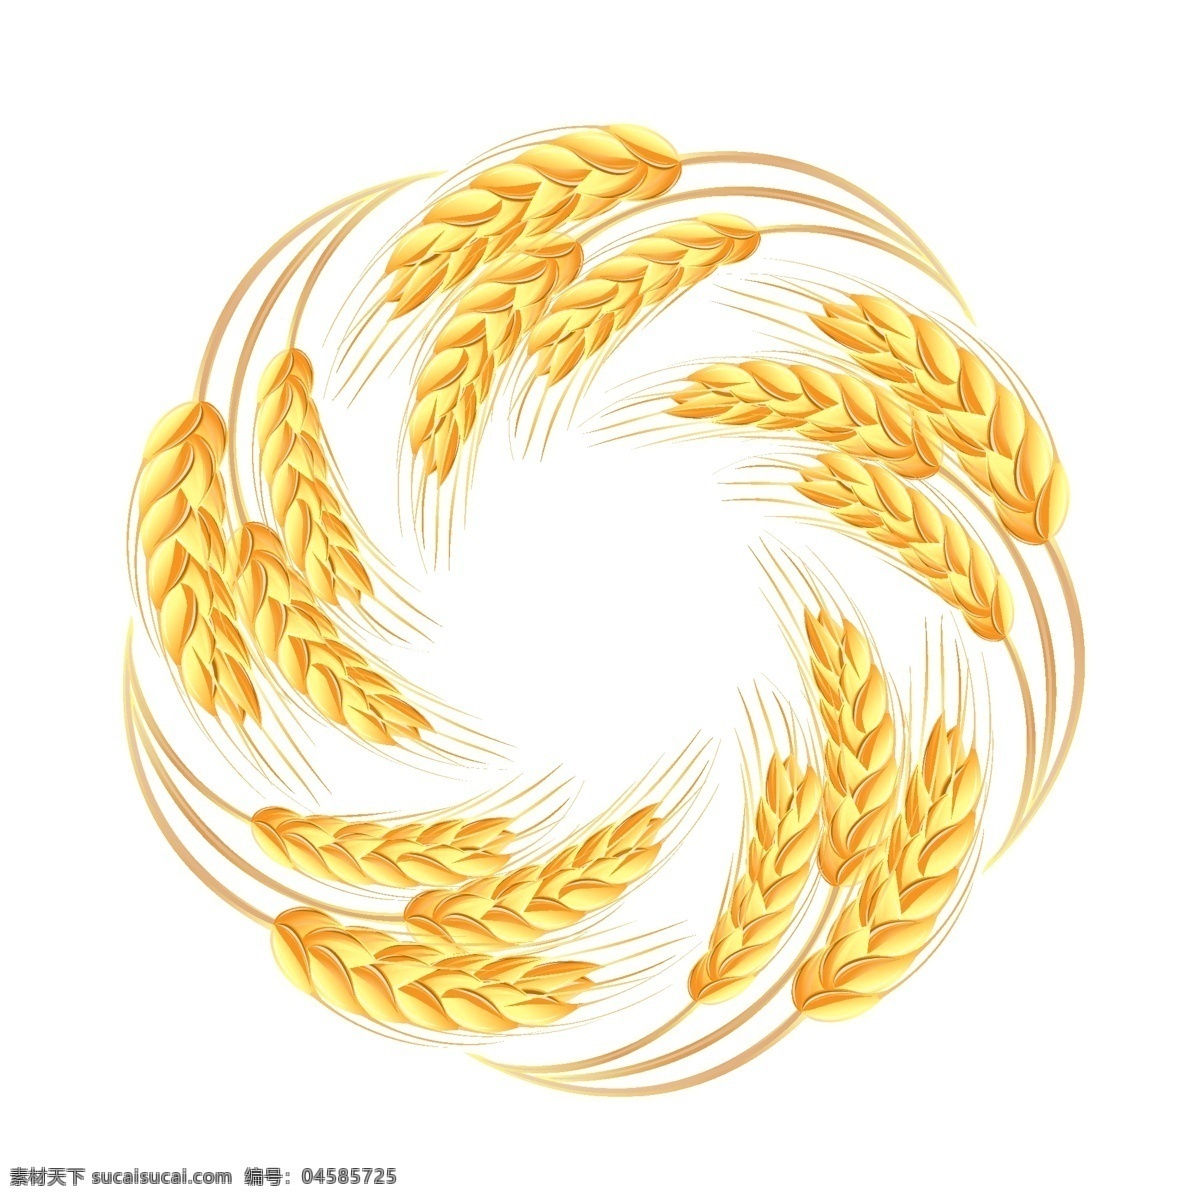 精美 小麦 矢量 麦穗 麦子 矢量素材 图案 矢量图 其他矢量图